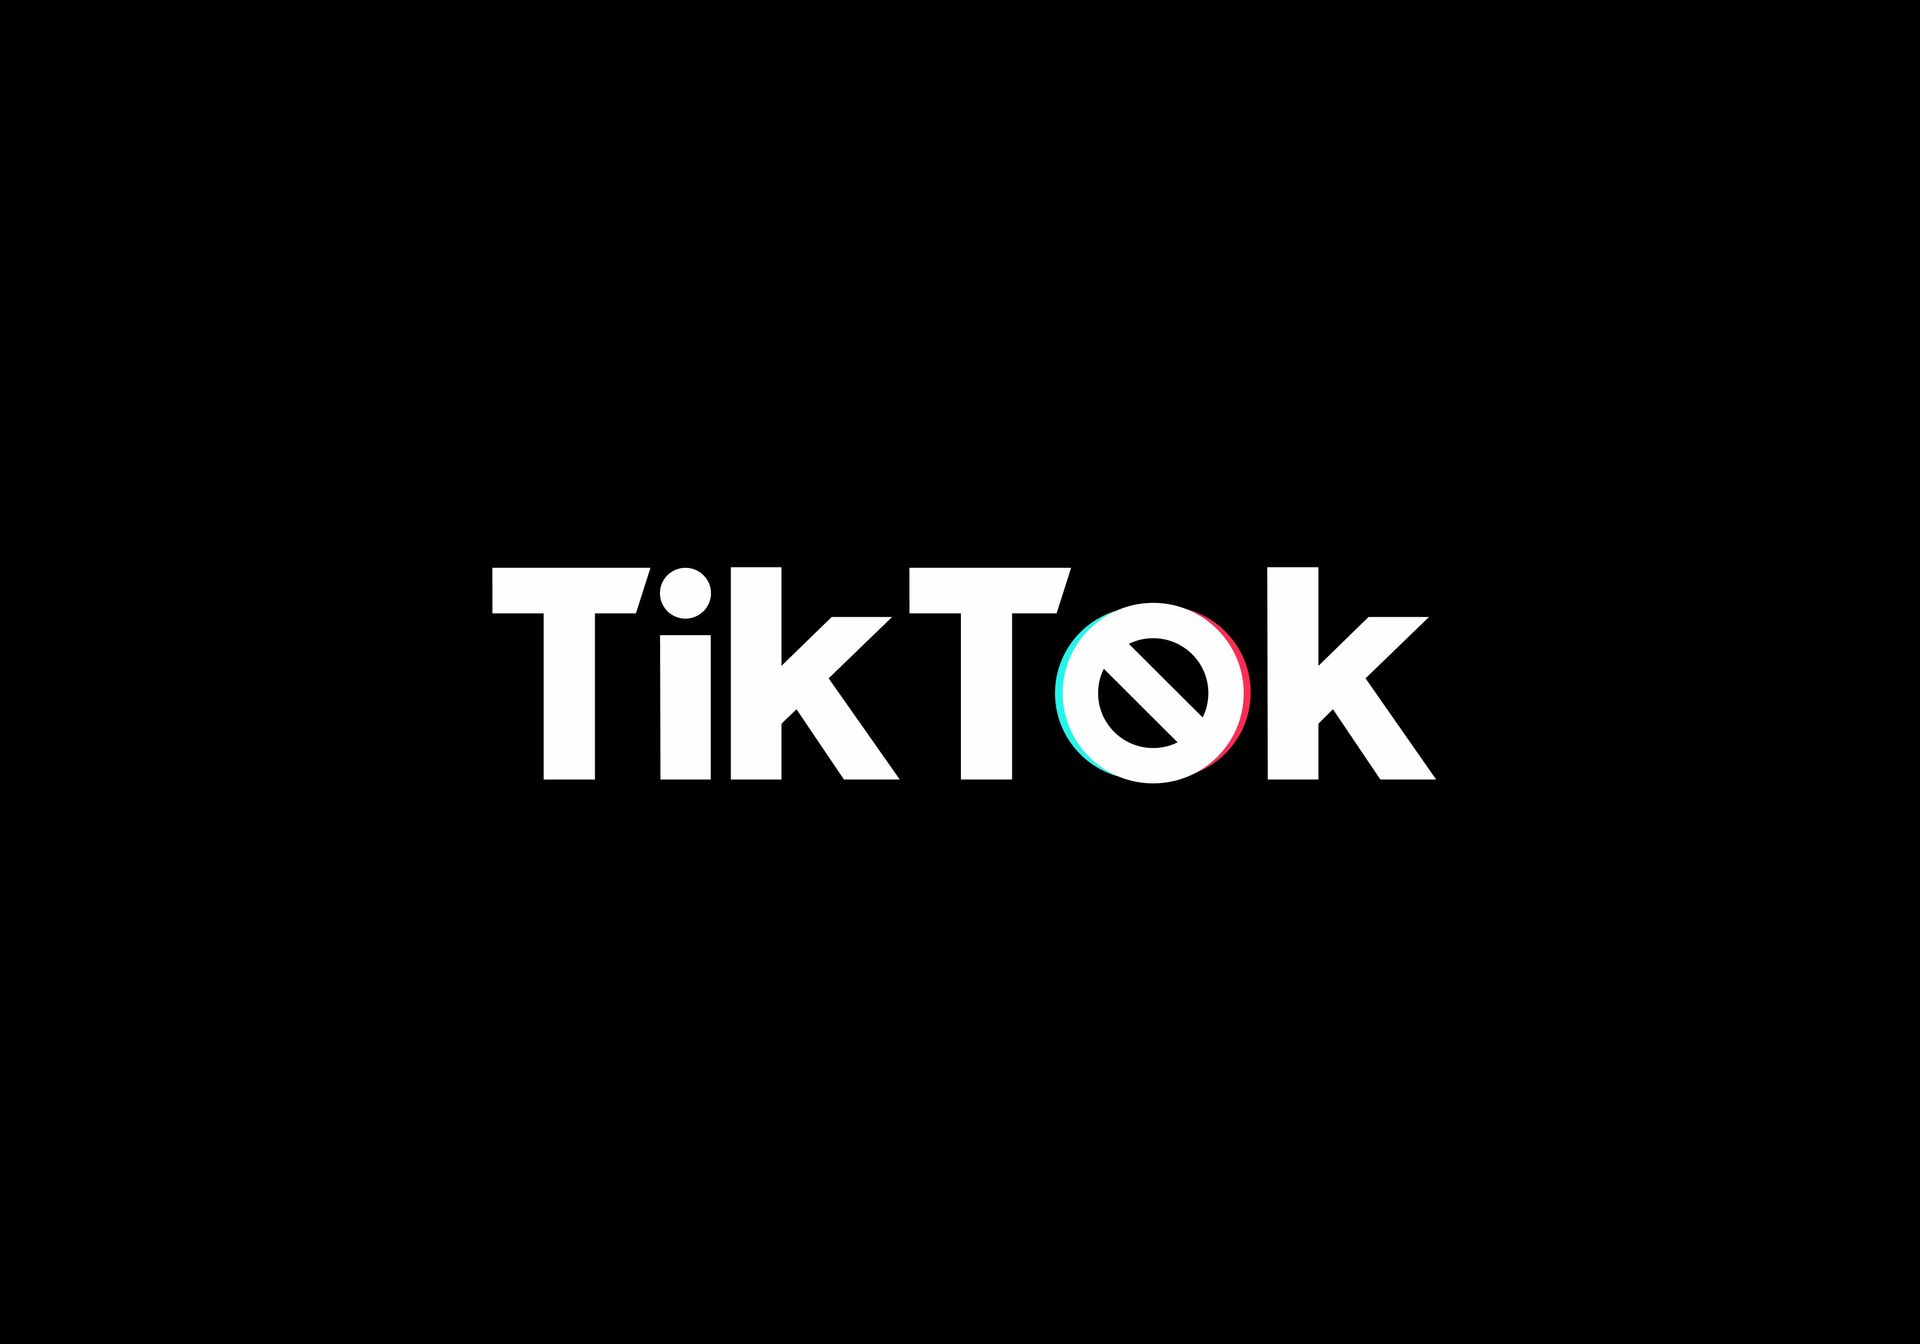 Der Senat lehnt den TikTok-Gesetzentwurf ab, was die Debatte über das TikTok-Verbot weiter anheizt